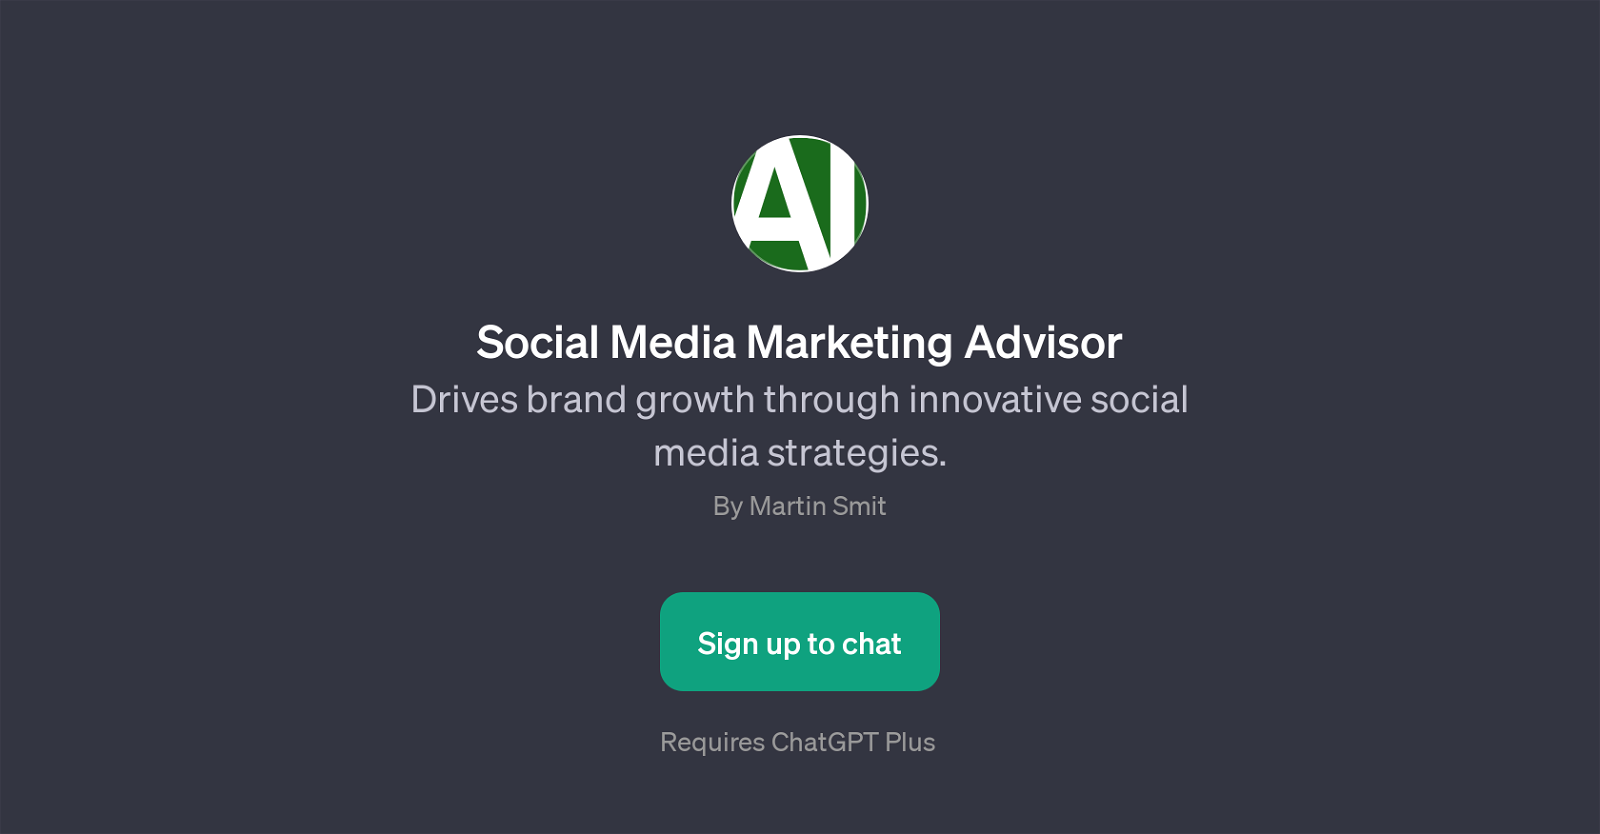 Social Media Marketing Advisor website